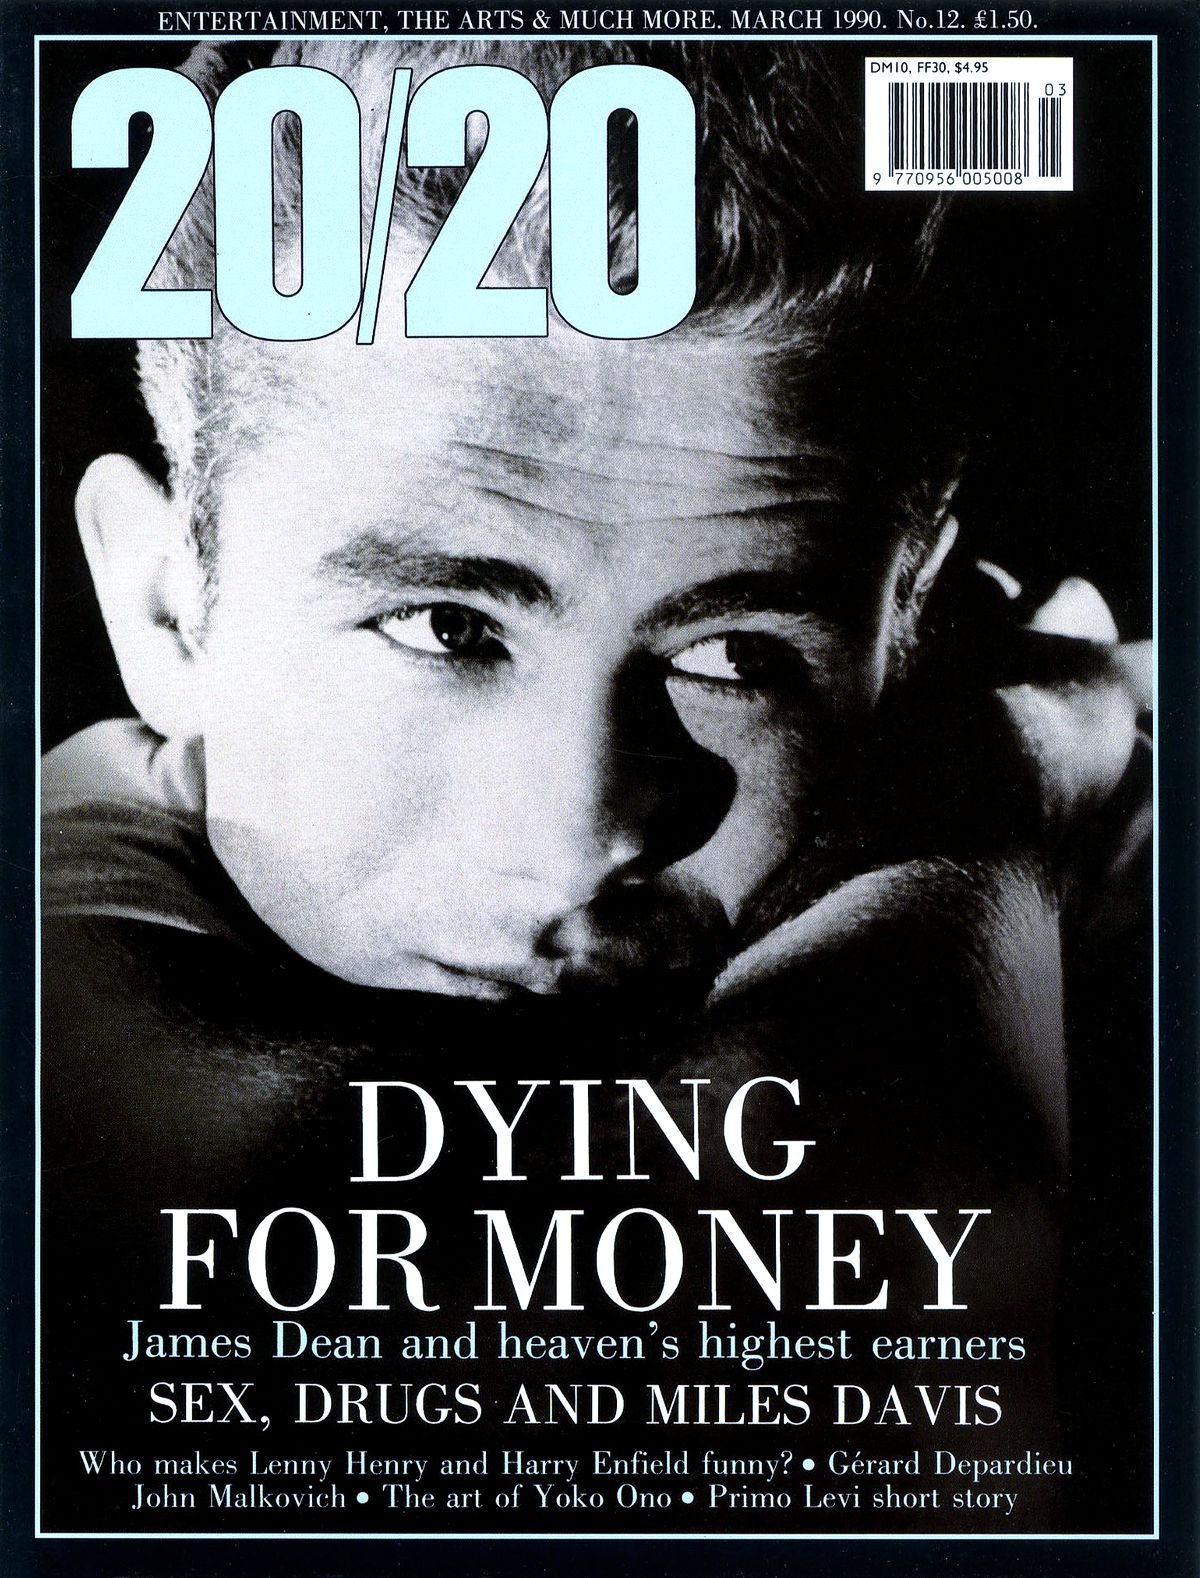 Джеймс Дин на обложке журнала 20/20 Time Out